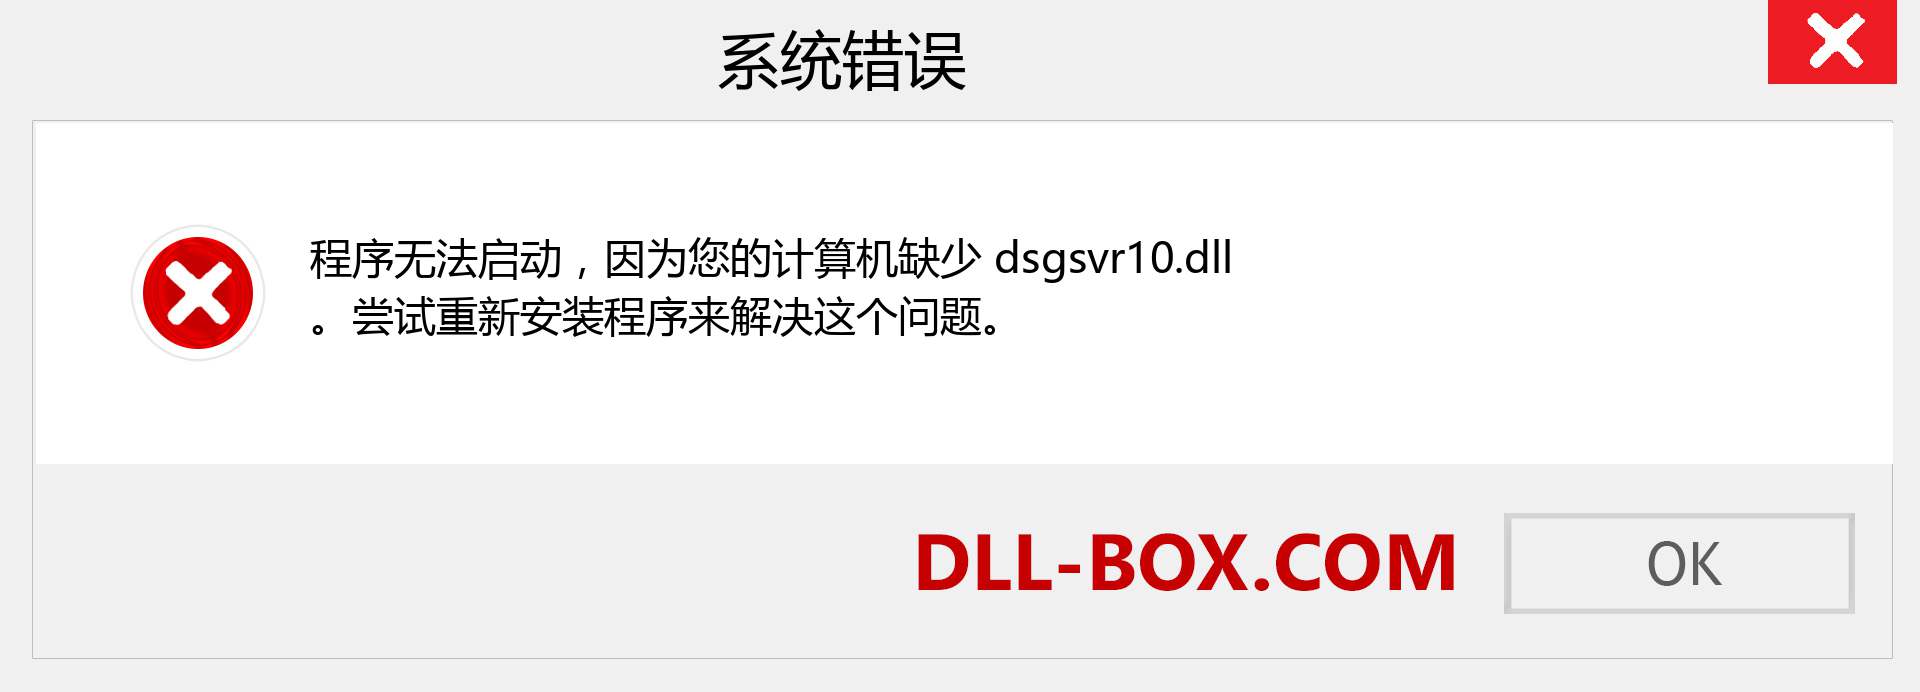 dsgsvr10.dll 文件丢失？。 适用于 Windows 7、8、10 的下载 - 修复 Windows、照片、图像上的 dsgsvr10 dll 丢失错误